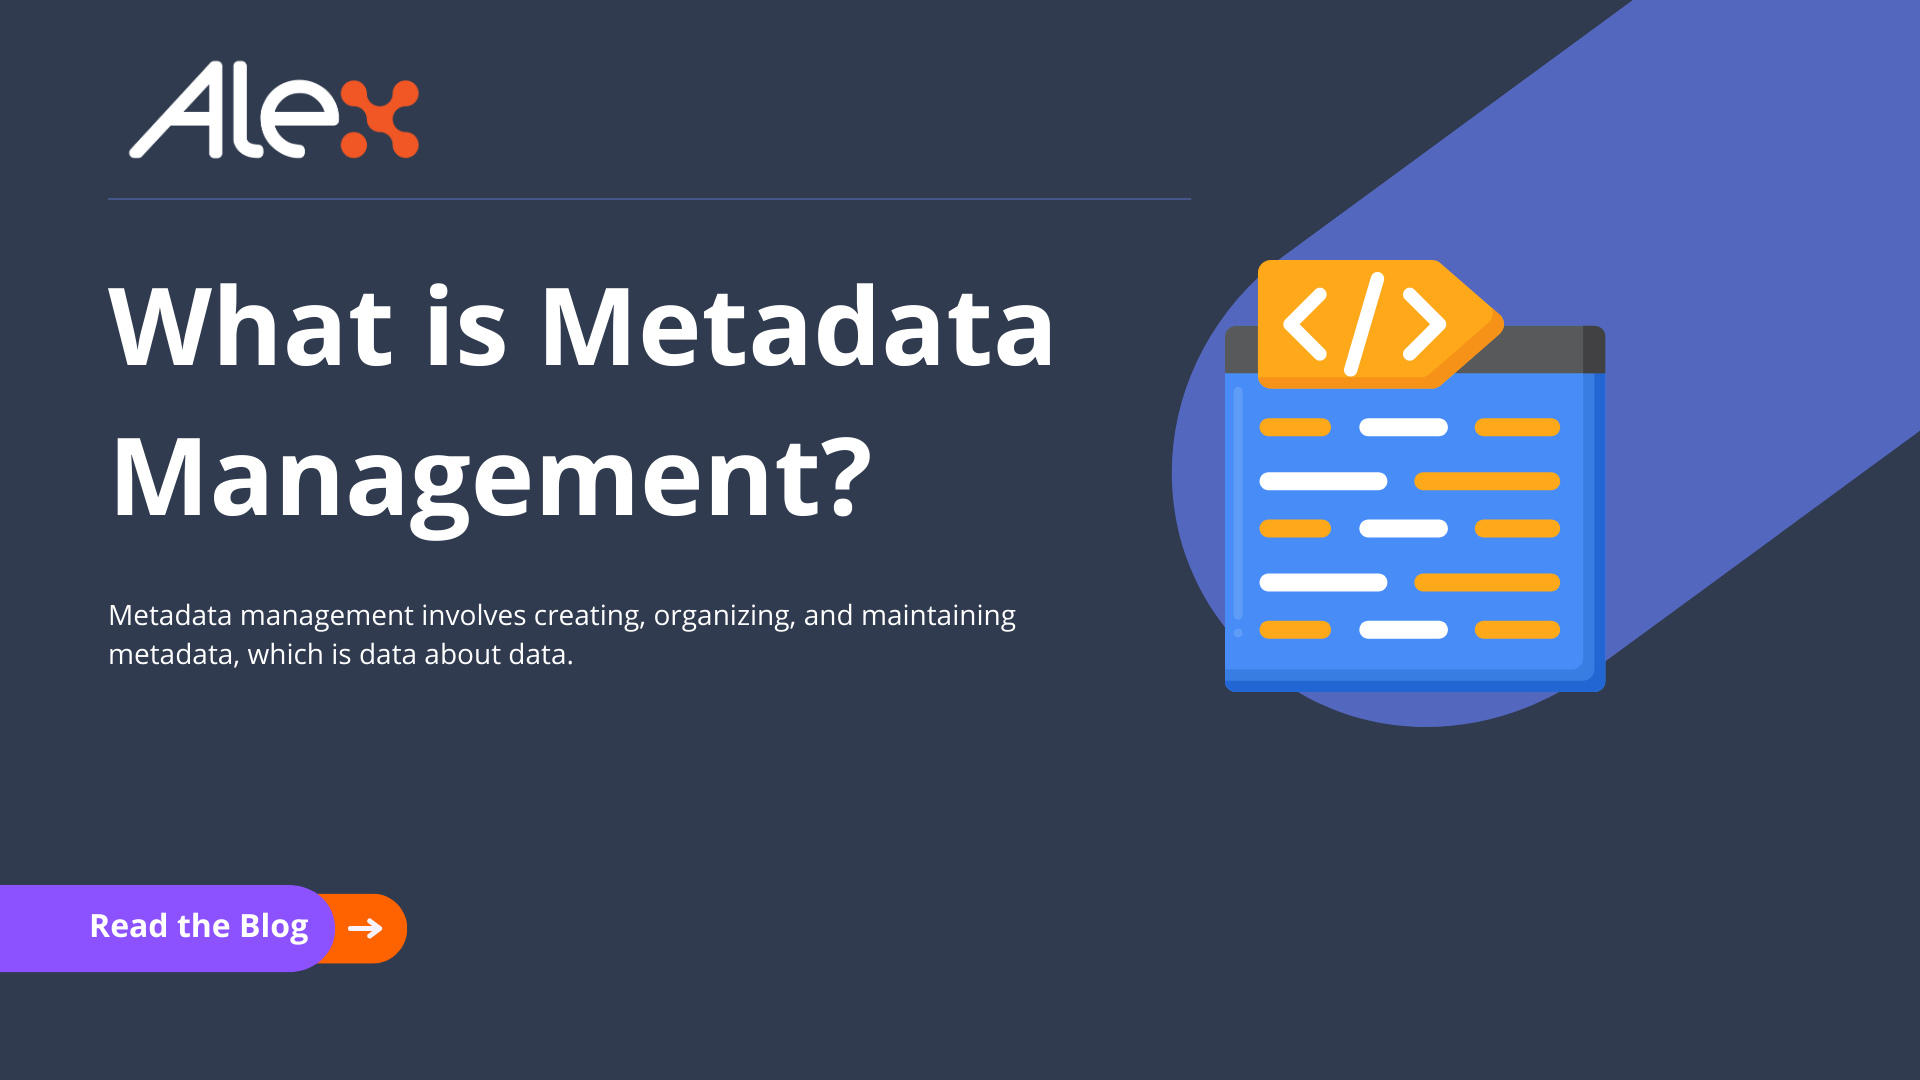 Metadata management